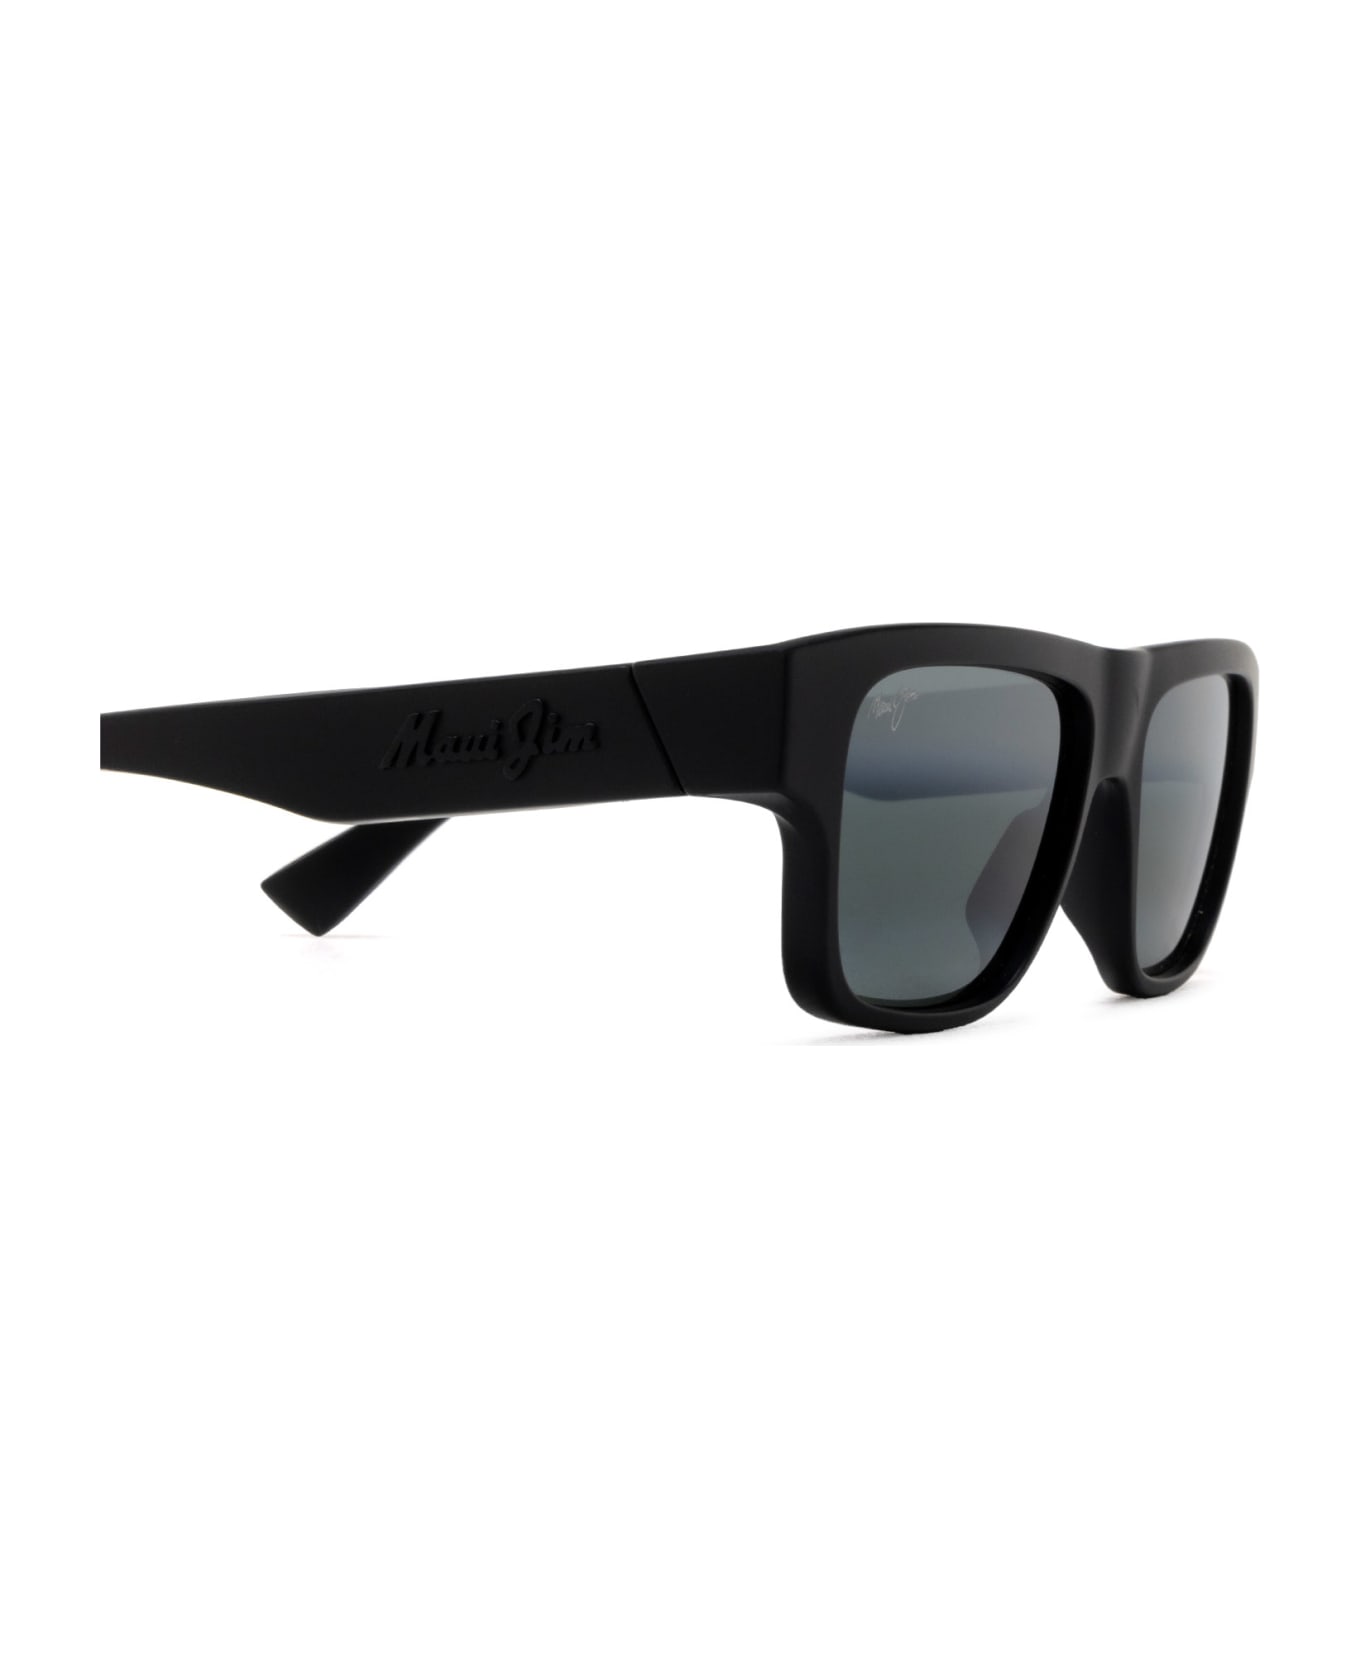 Maui Jim Mj638 Matte Black Sunglasses - Matte Black